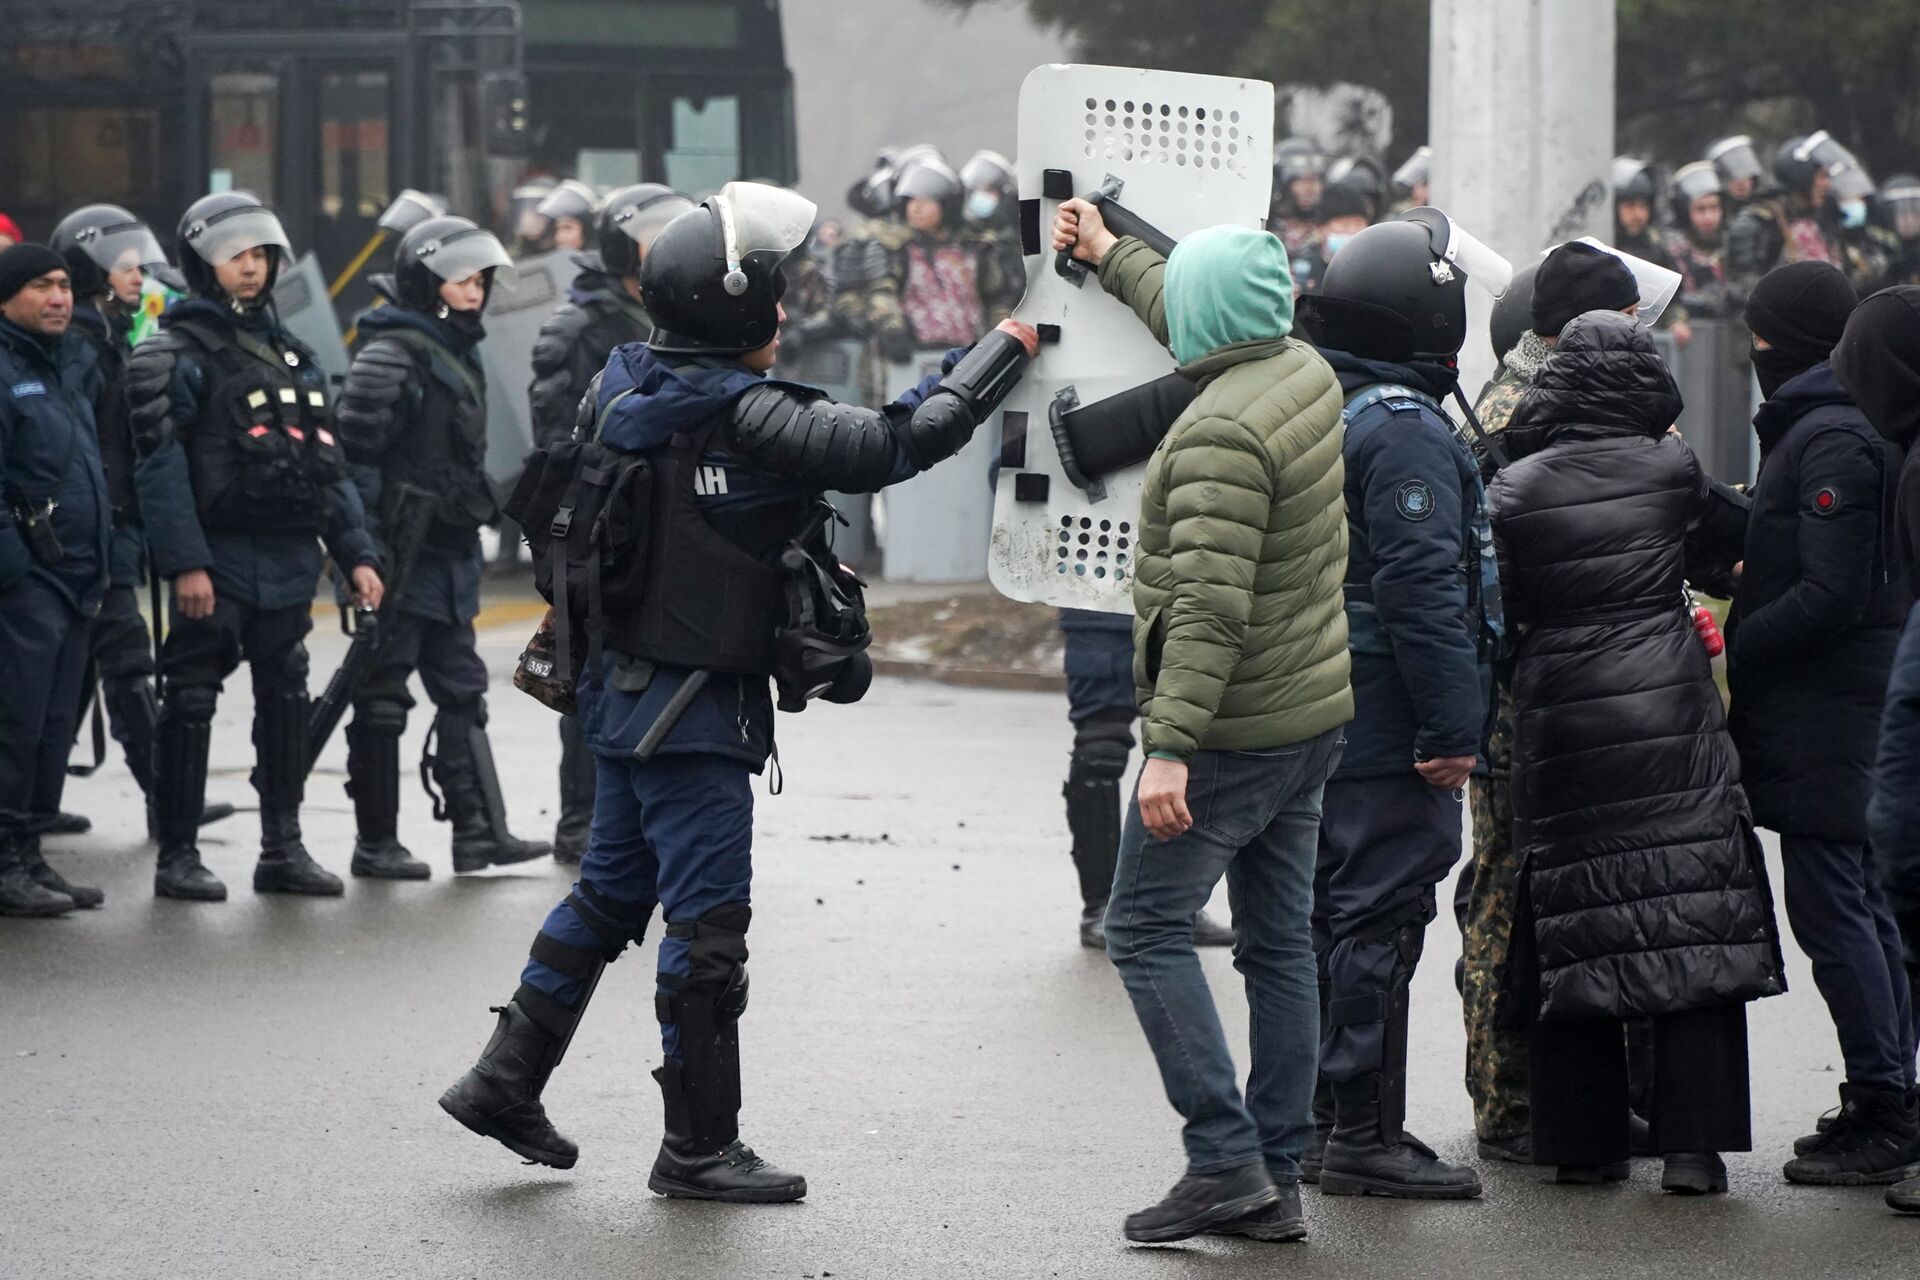 Демонстрант возвращает щит сотруднику ОМОНа во время акции протеста в Алматы, Казахстан, в среду, 5 января 2022 г.  - Sputnik Казахстан, 1920, 02.01.2023